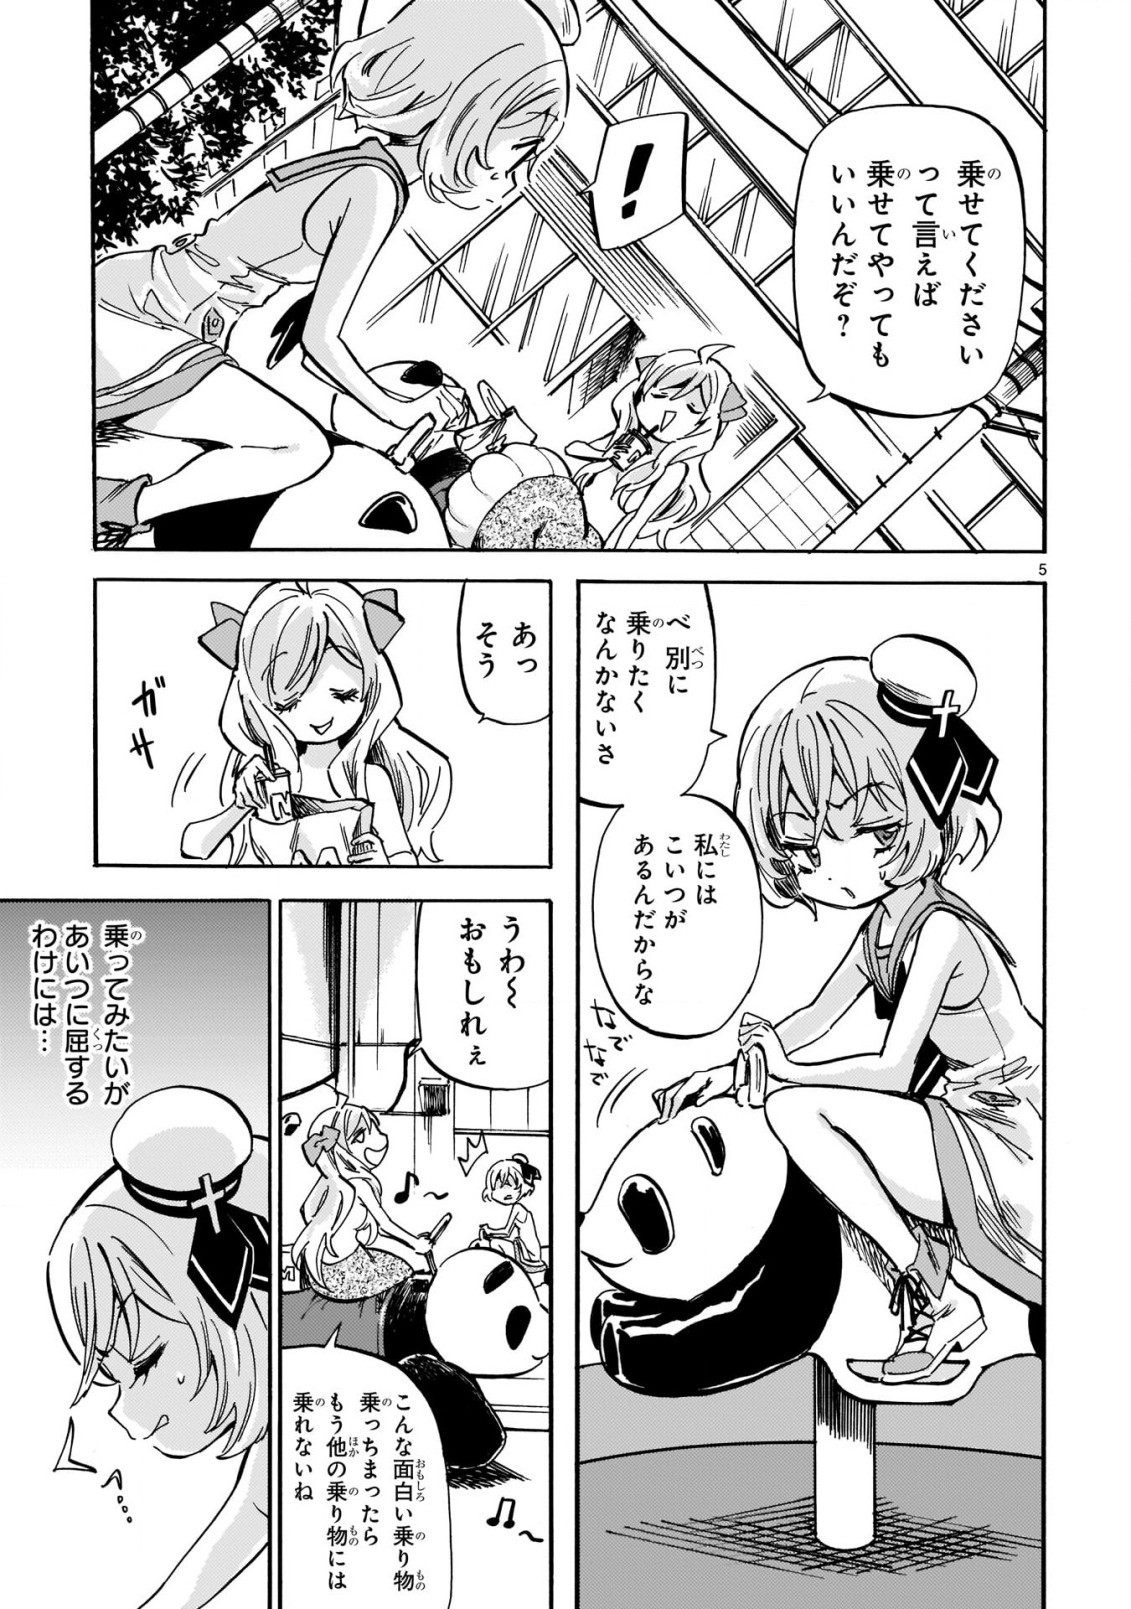 Jashin-chan Dropkick - Chapter 207 - Page 5